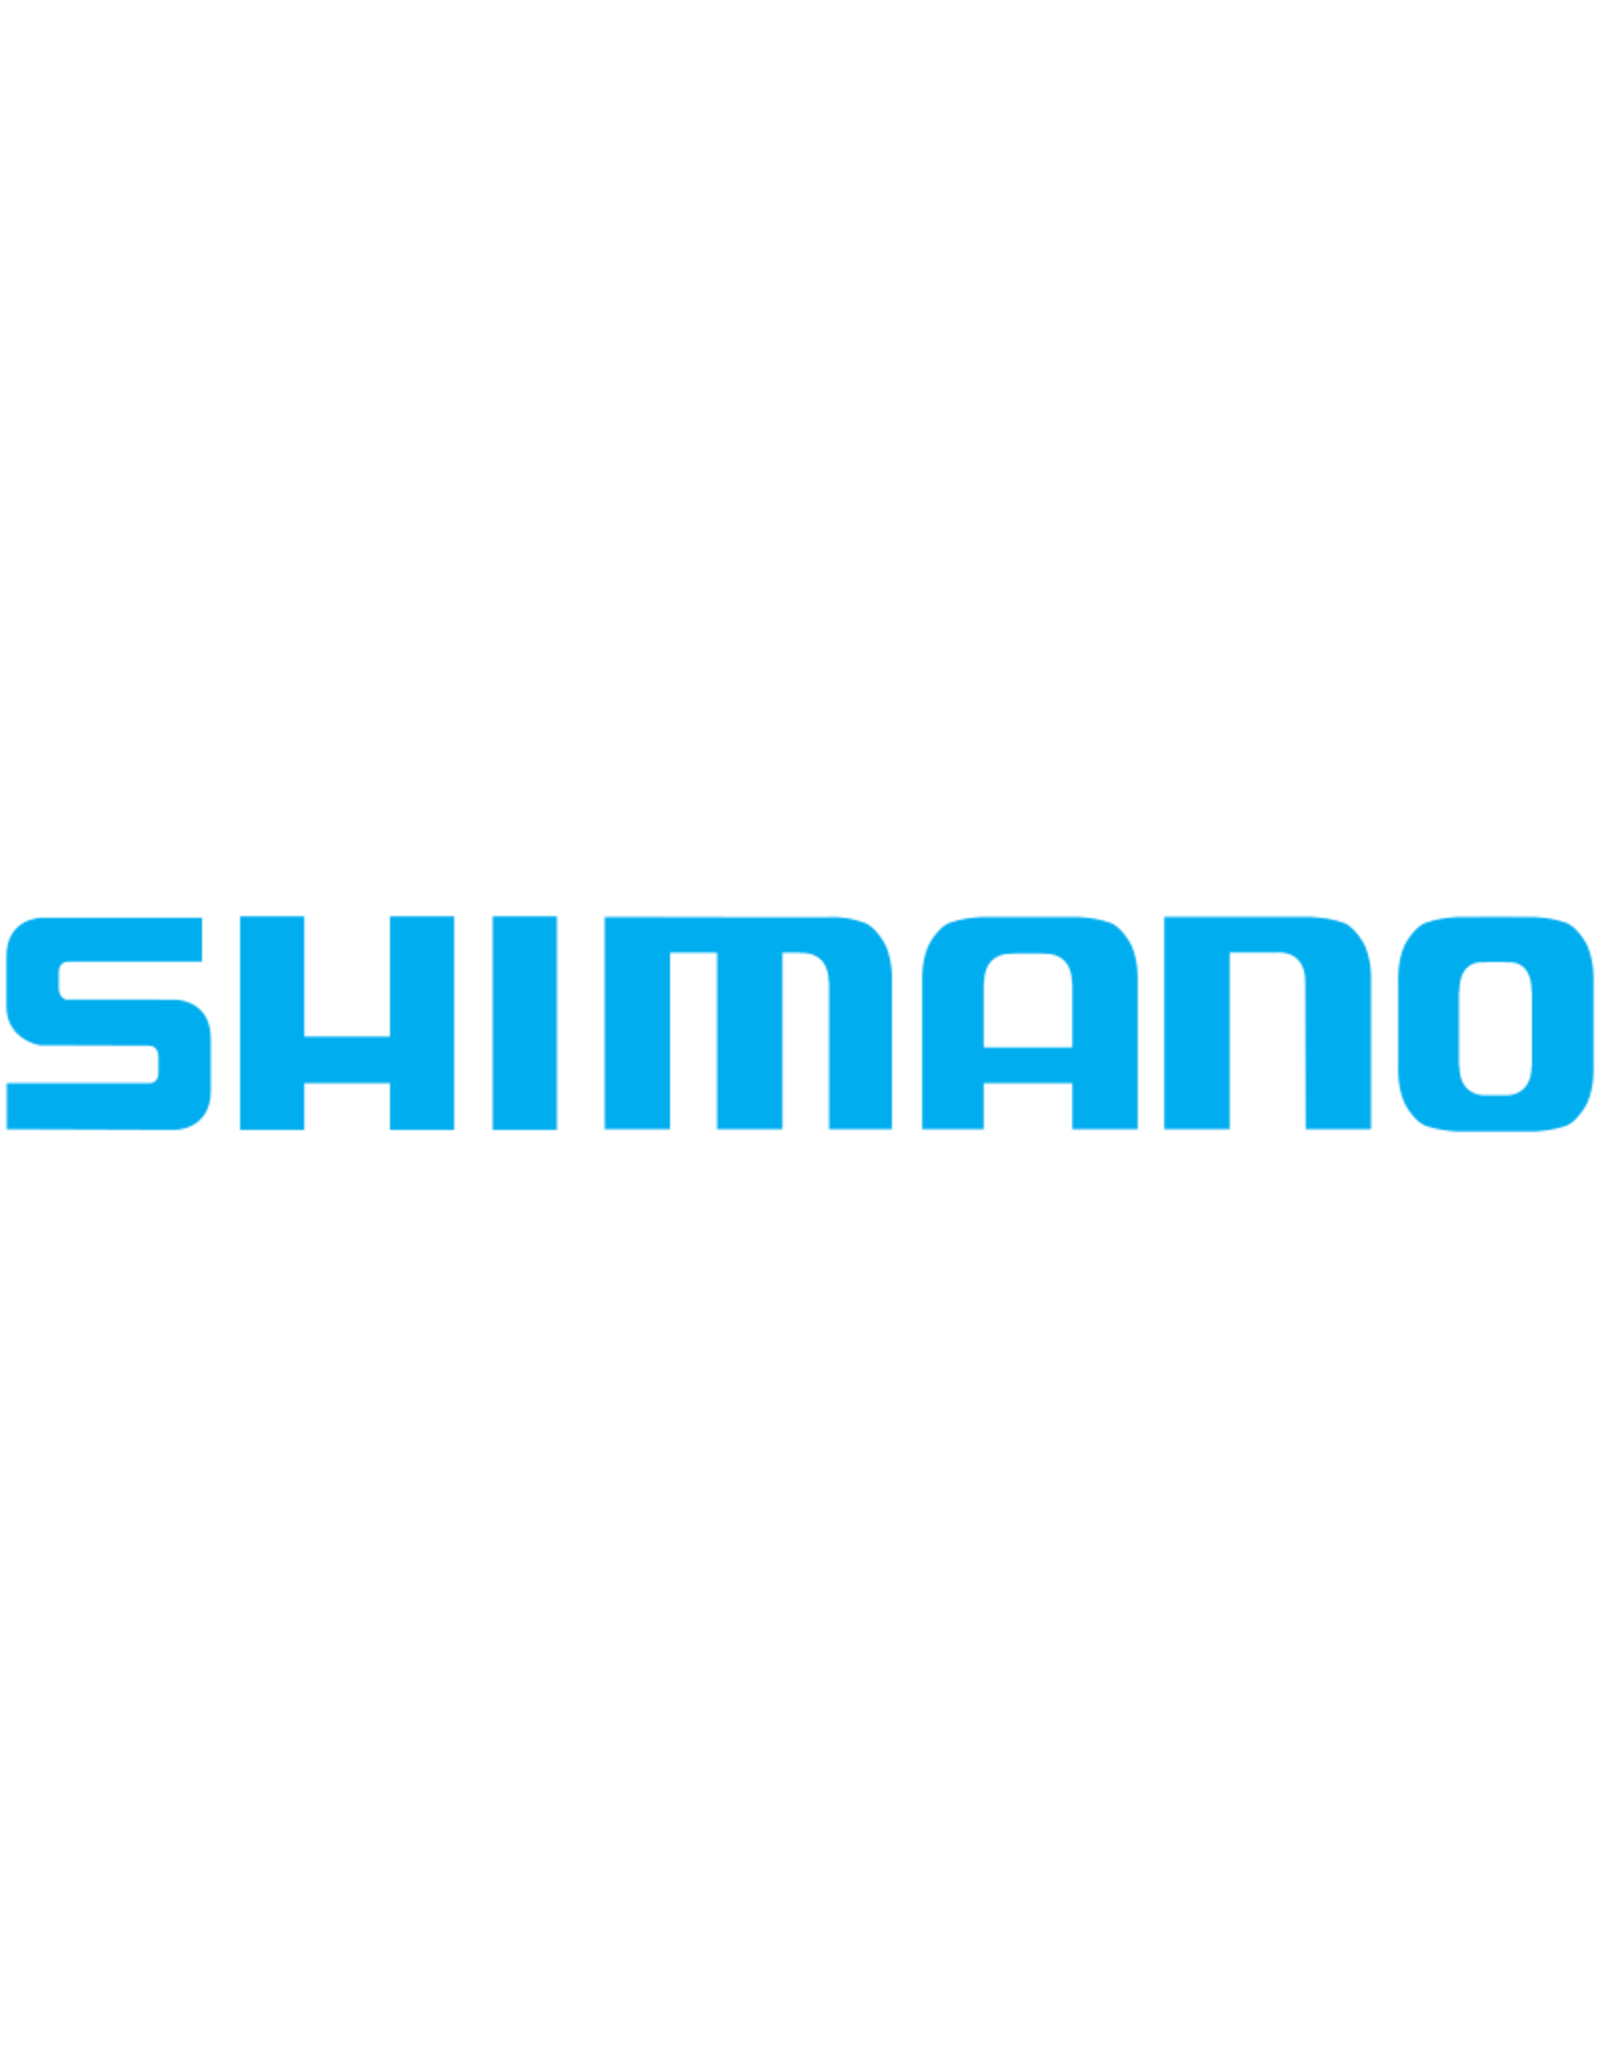 Shimano RD15862  EARED WASHER